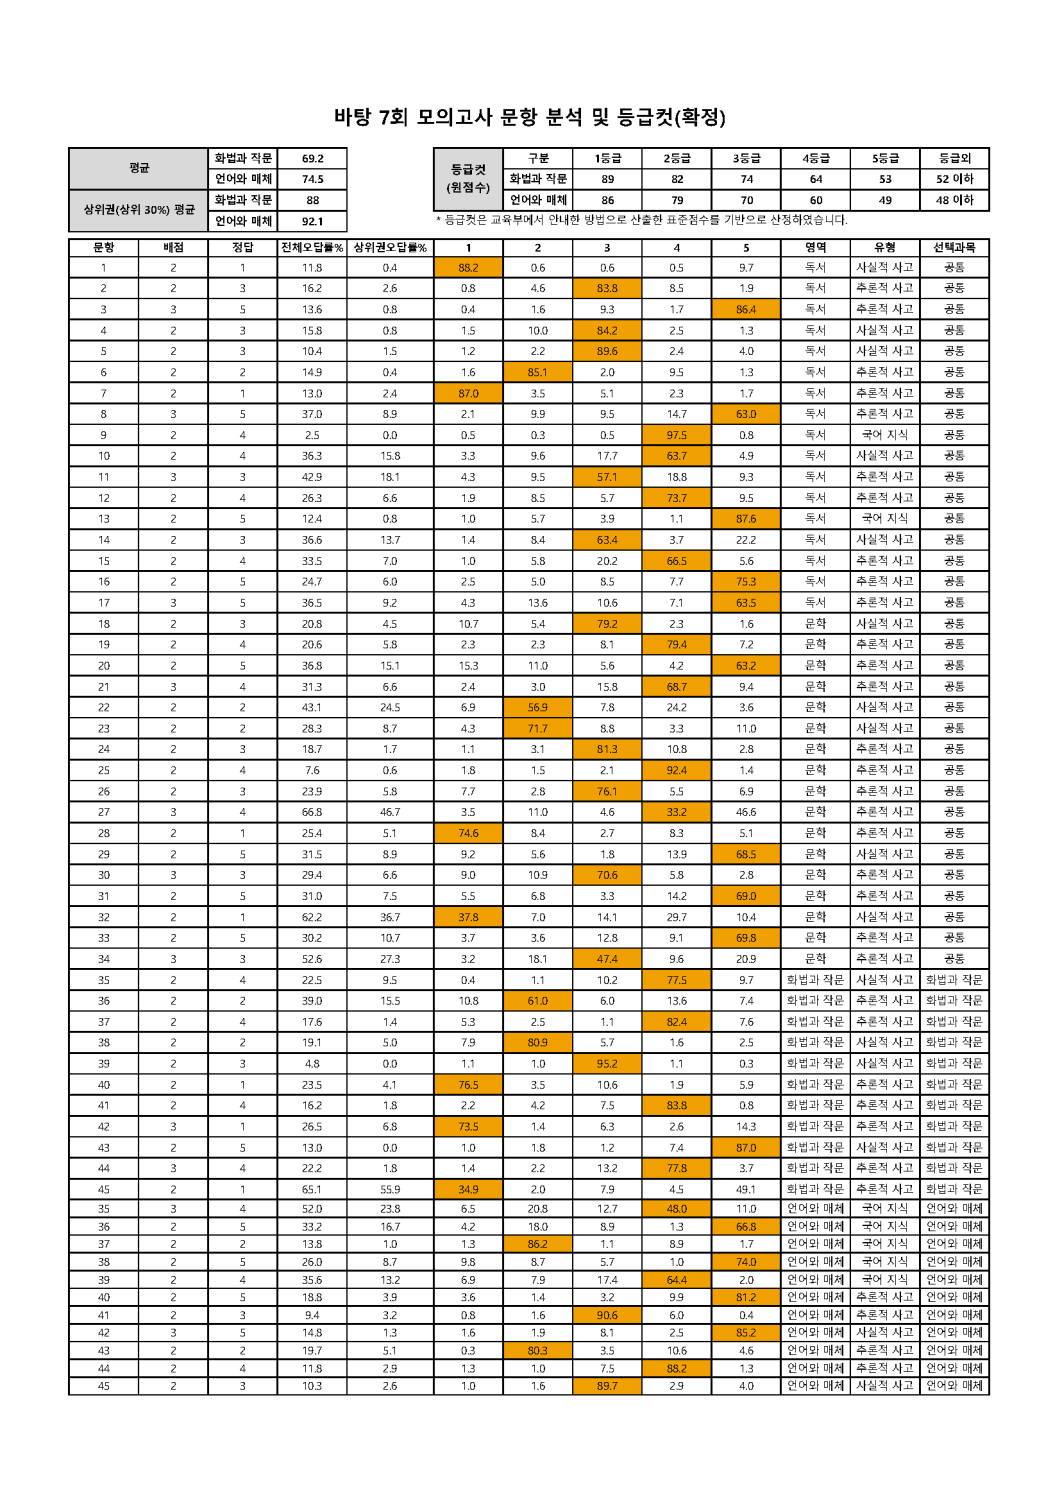 2022학년도 바탕 문항분석표 및 등급컷(1회~10회)_페이지_07.png